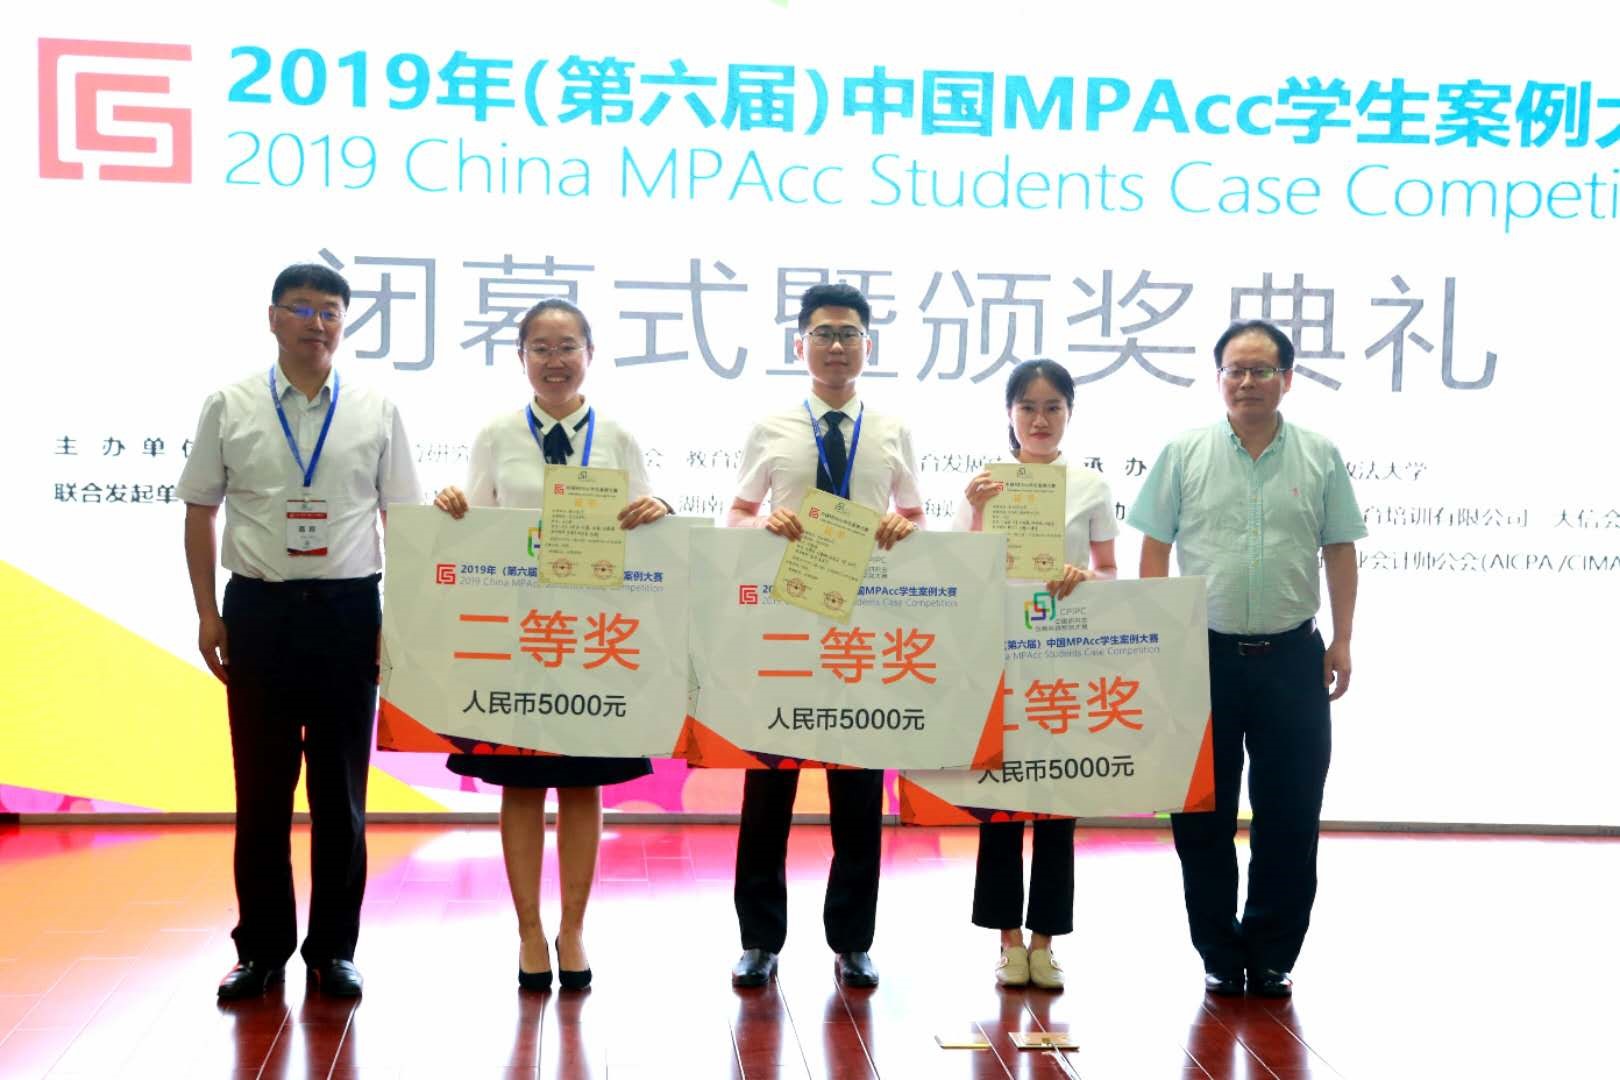 云大师生团队在第七届中国MPAcc学生案例大赛中再创佳绩-云南大学新闻网